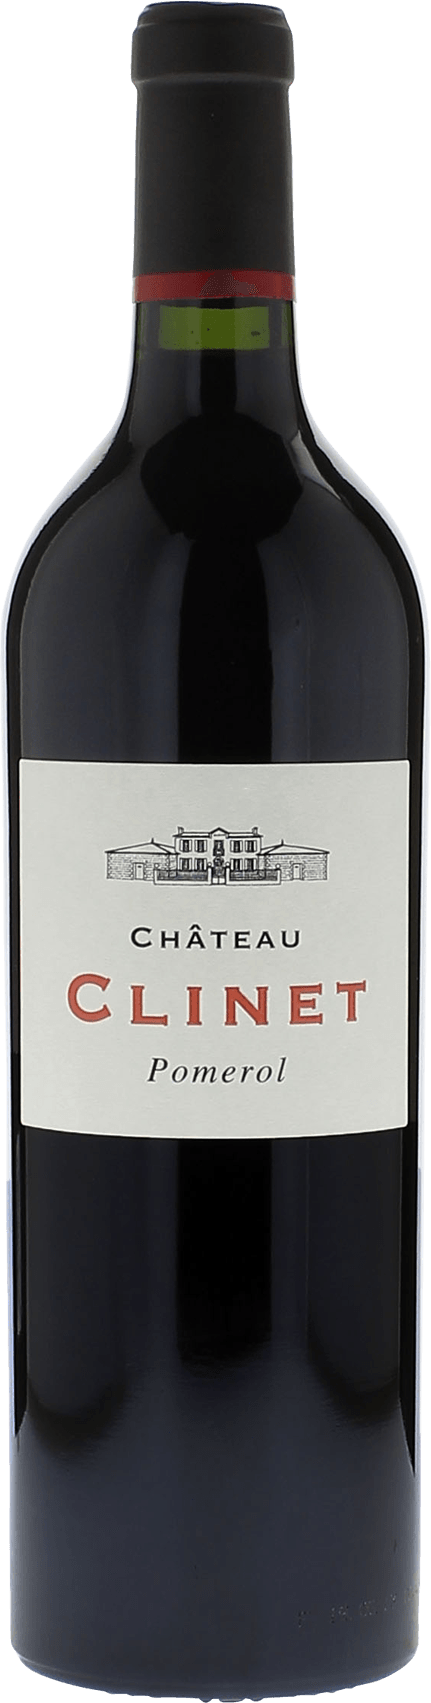 Clinet 2021  Pomerol, Bordeaux rouge